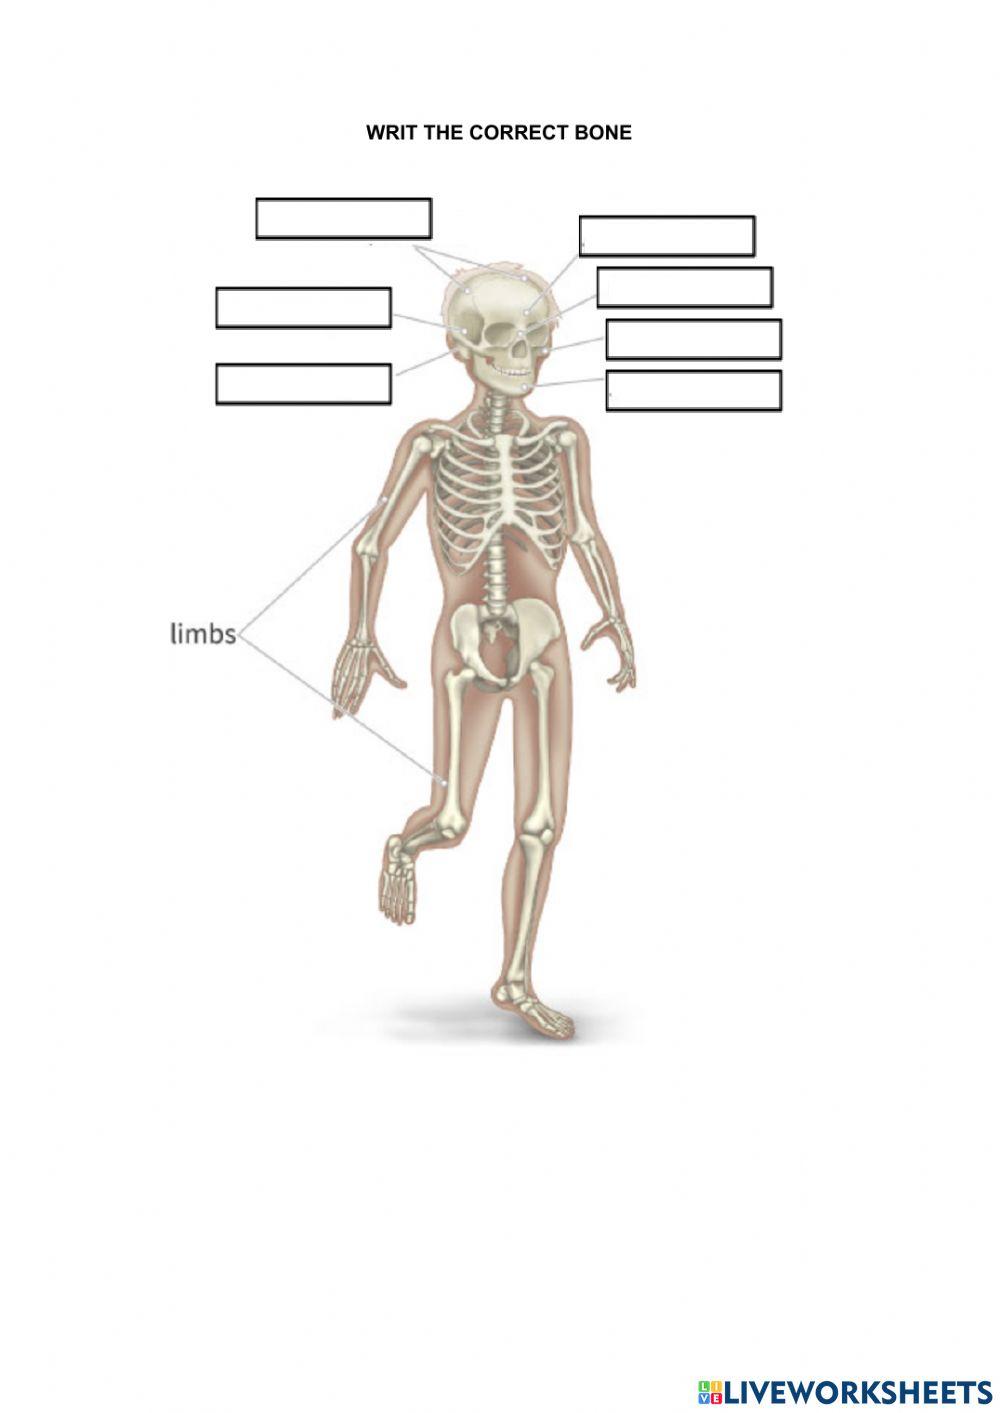 Human's bones